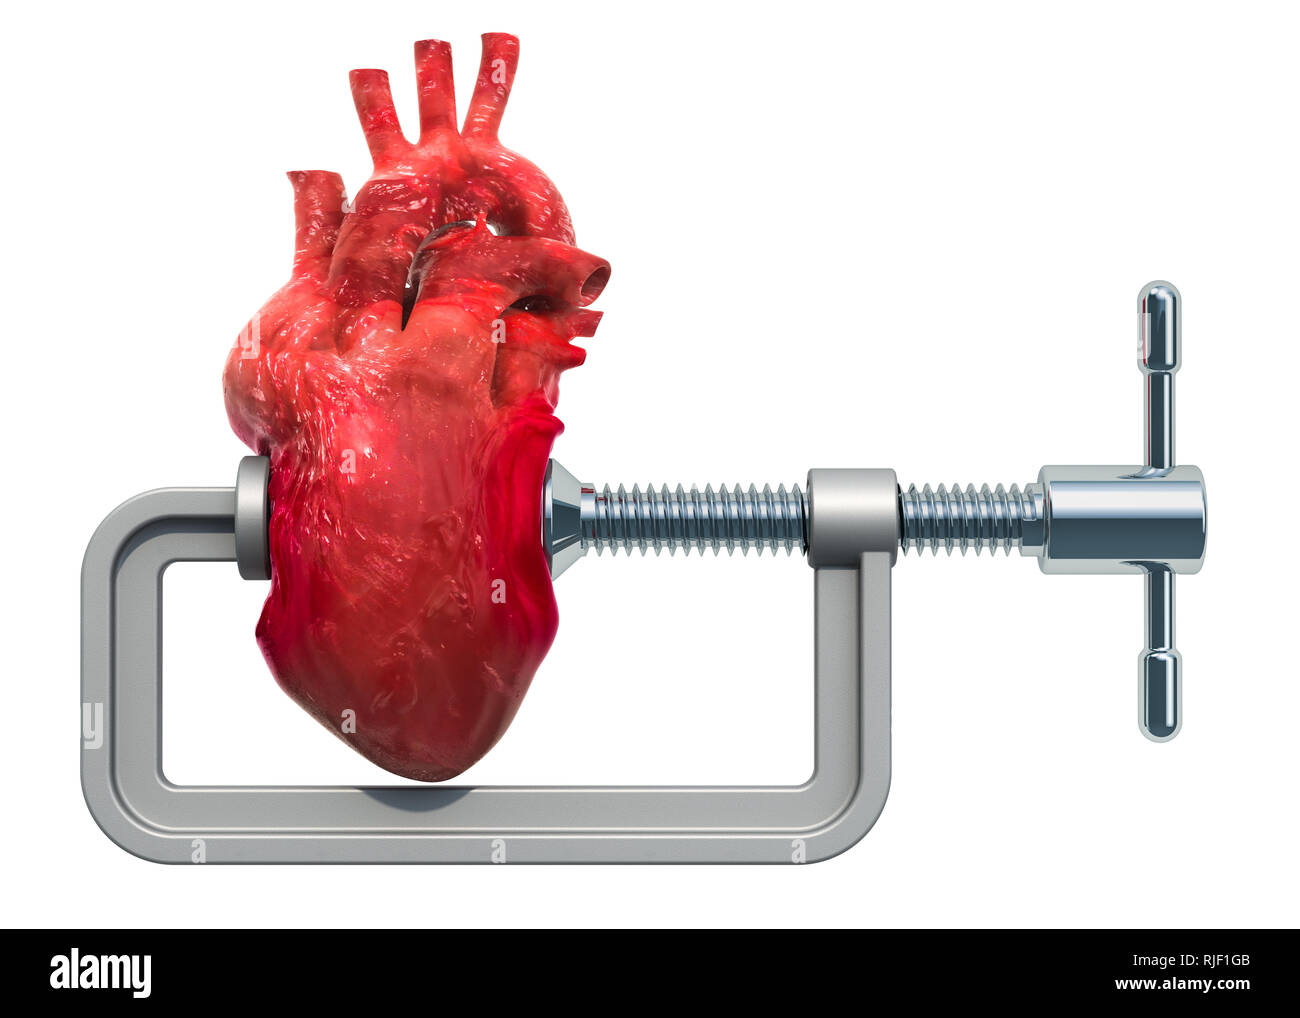 Attacco di cuore, malattia cardiaca concetto. Morsa con cuore umano. 3D rendering isolati su sfondo bianco Foto Stock